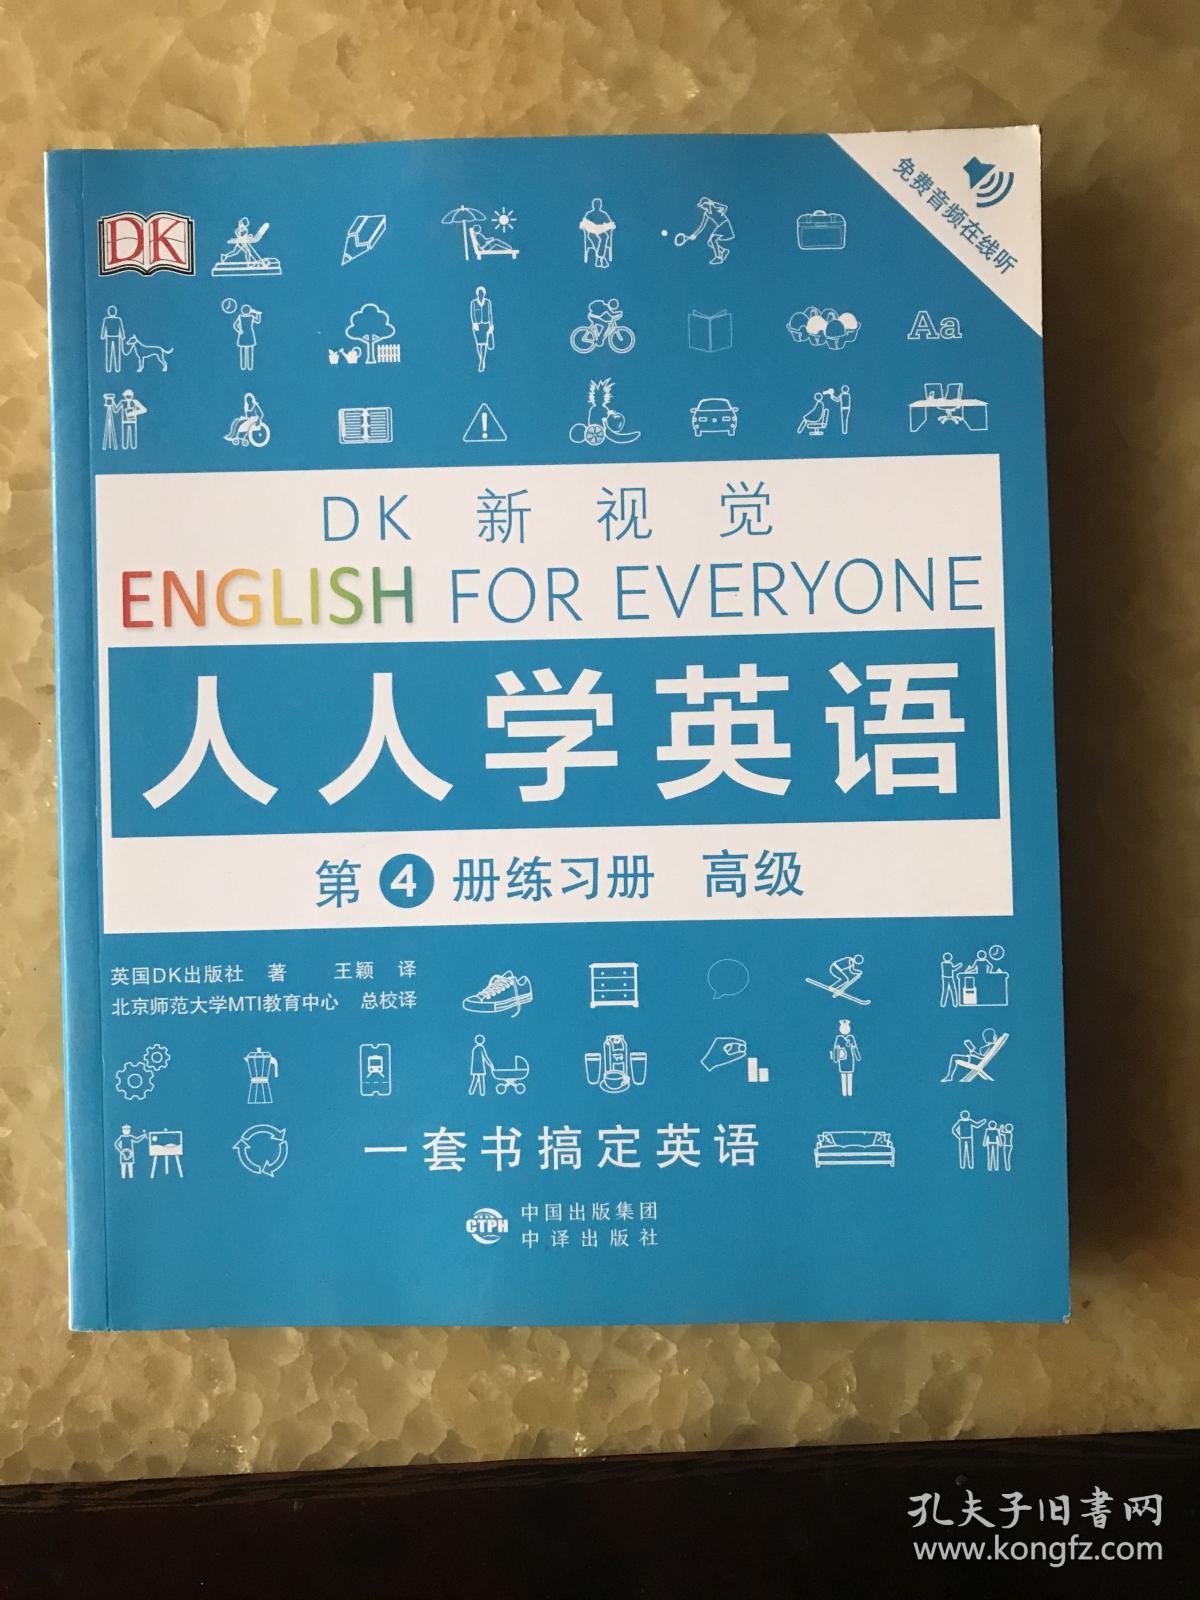 高级练习册/DK新视觉 English for Everyone 人人学英语第4册练习册